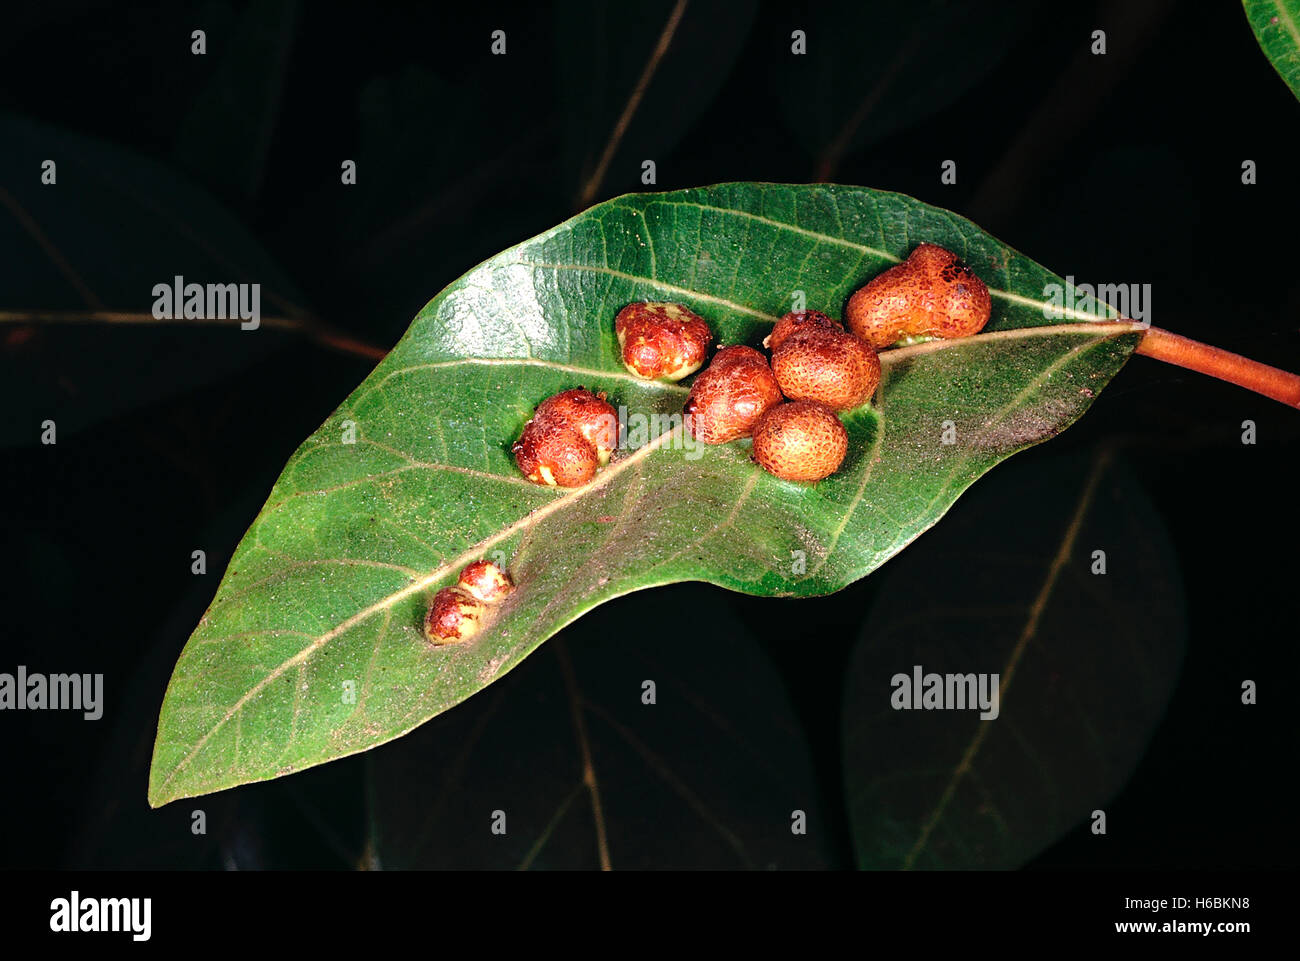 Einflügelig mit Galle. Ficus racemosa. Familie: moraceae. Eine Art wilden Feigenbaum in feuchten Bereichen gefunden. Stockfoto